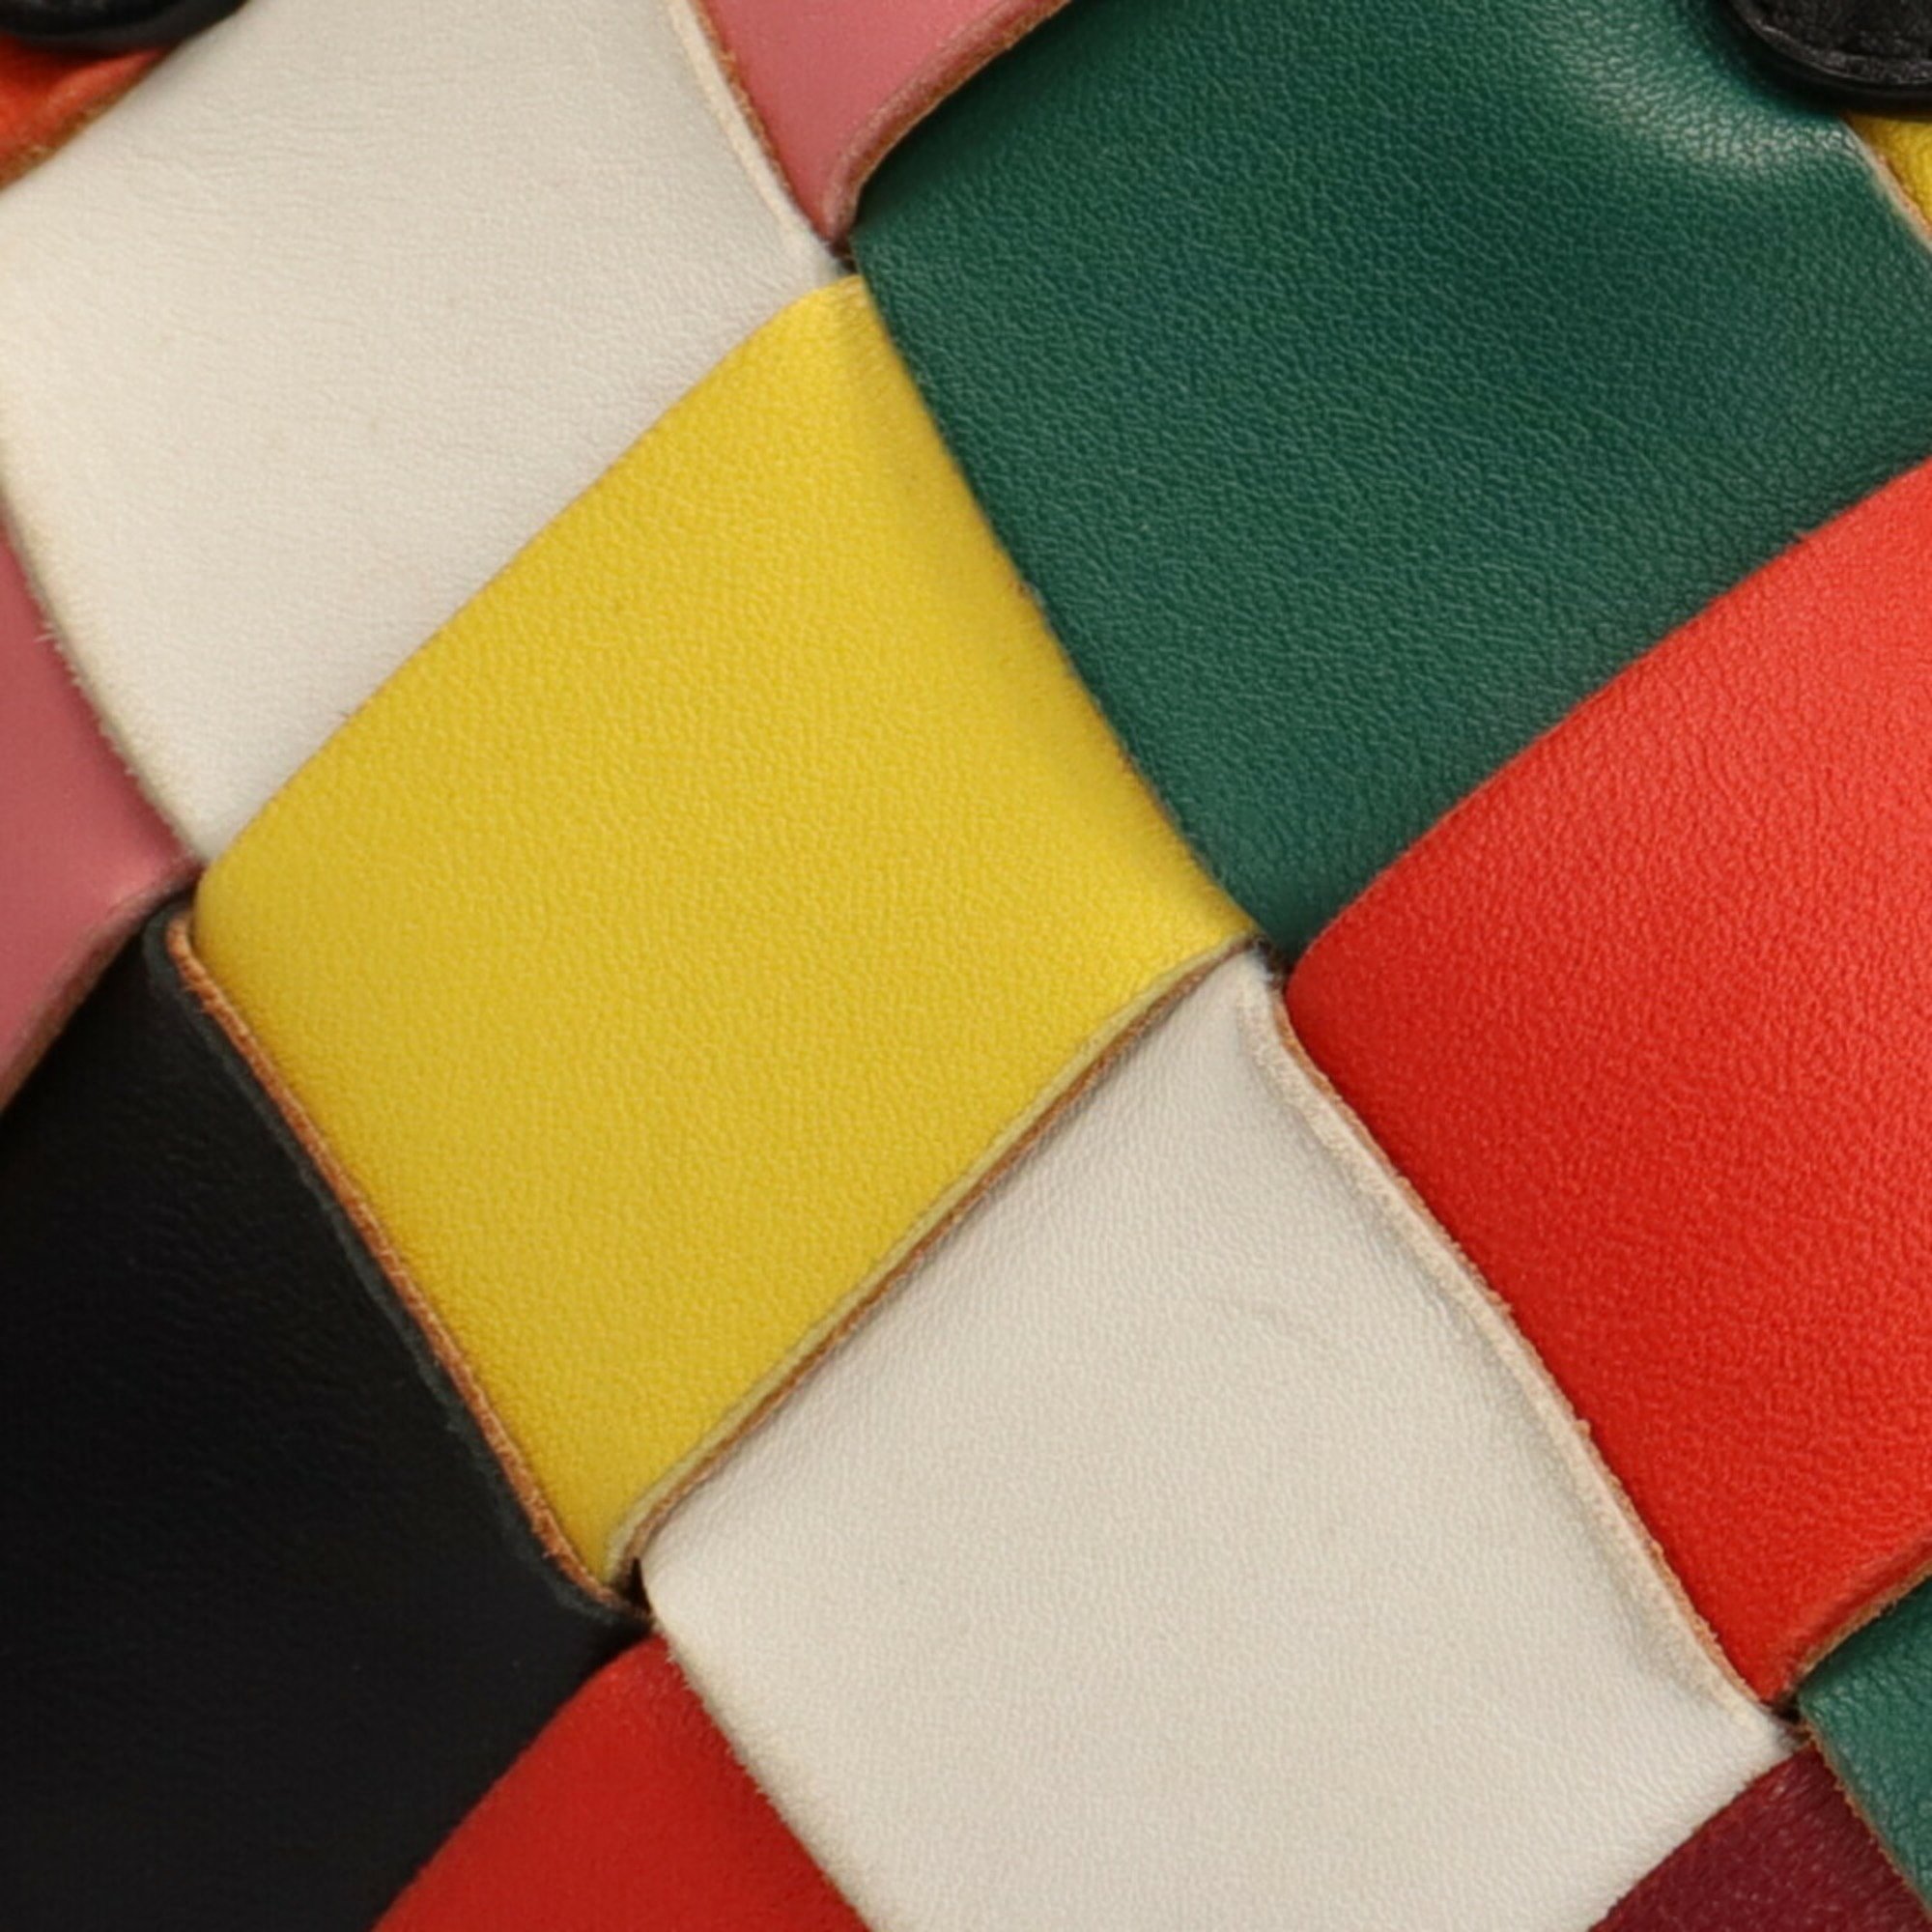 Loewe LOEWE shoulder bag leather multicolor ladies